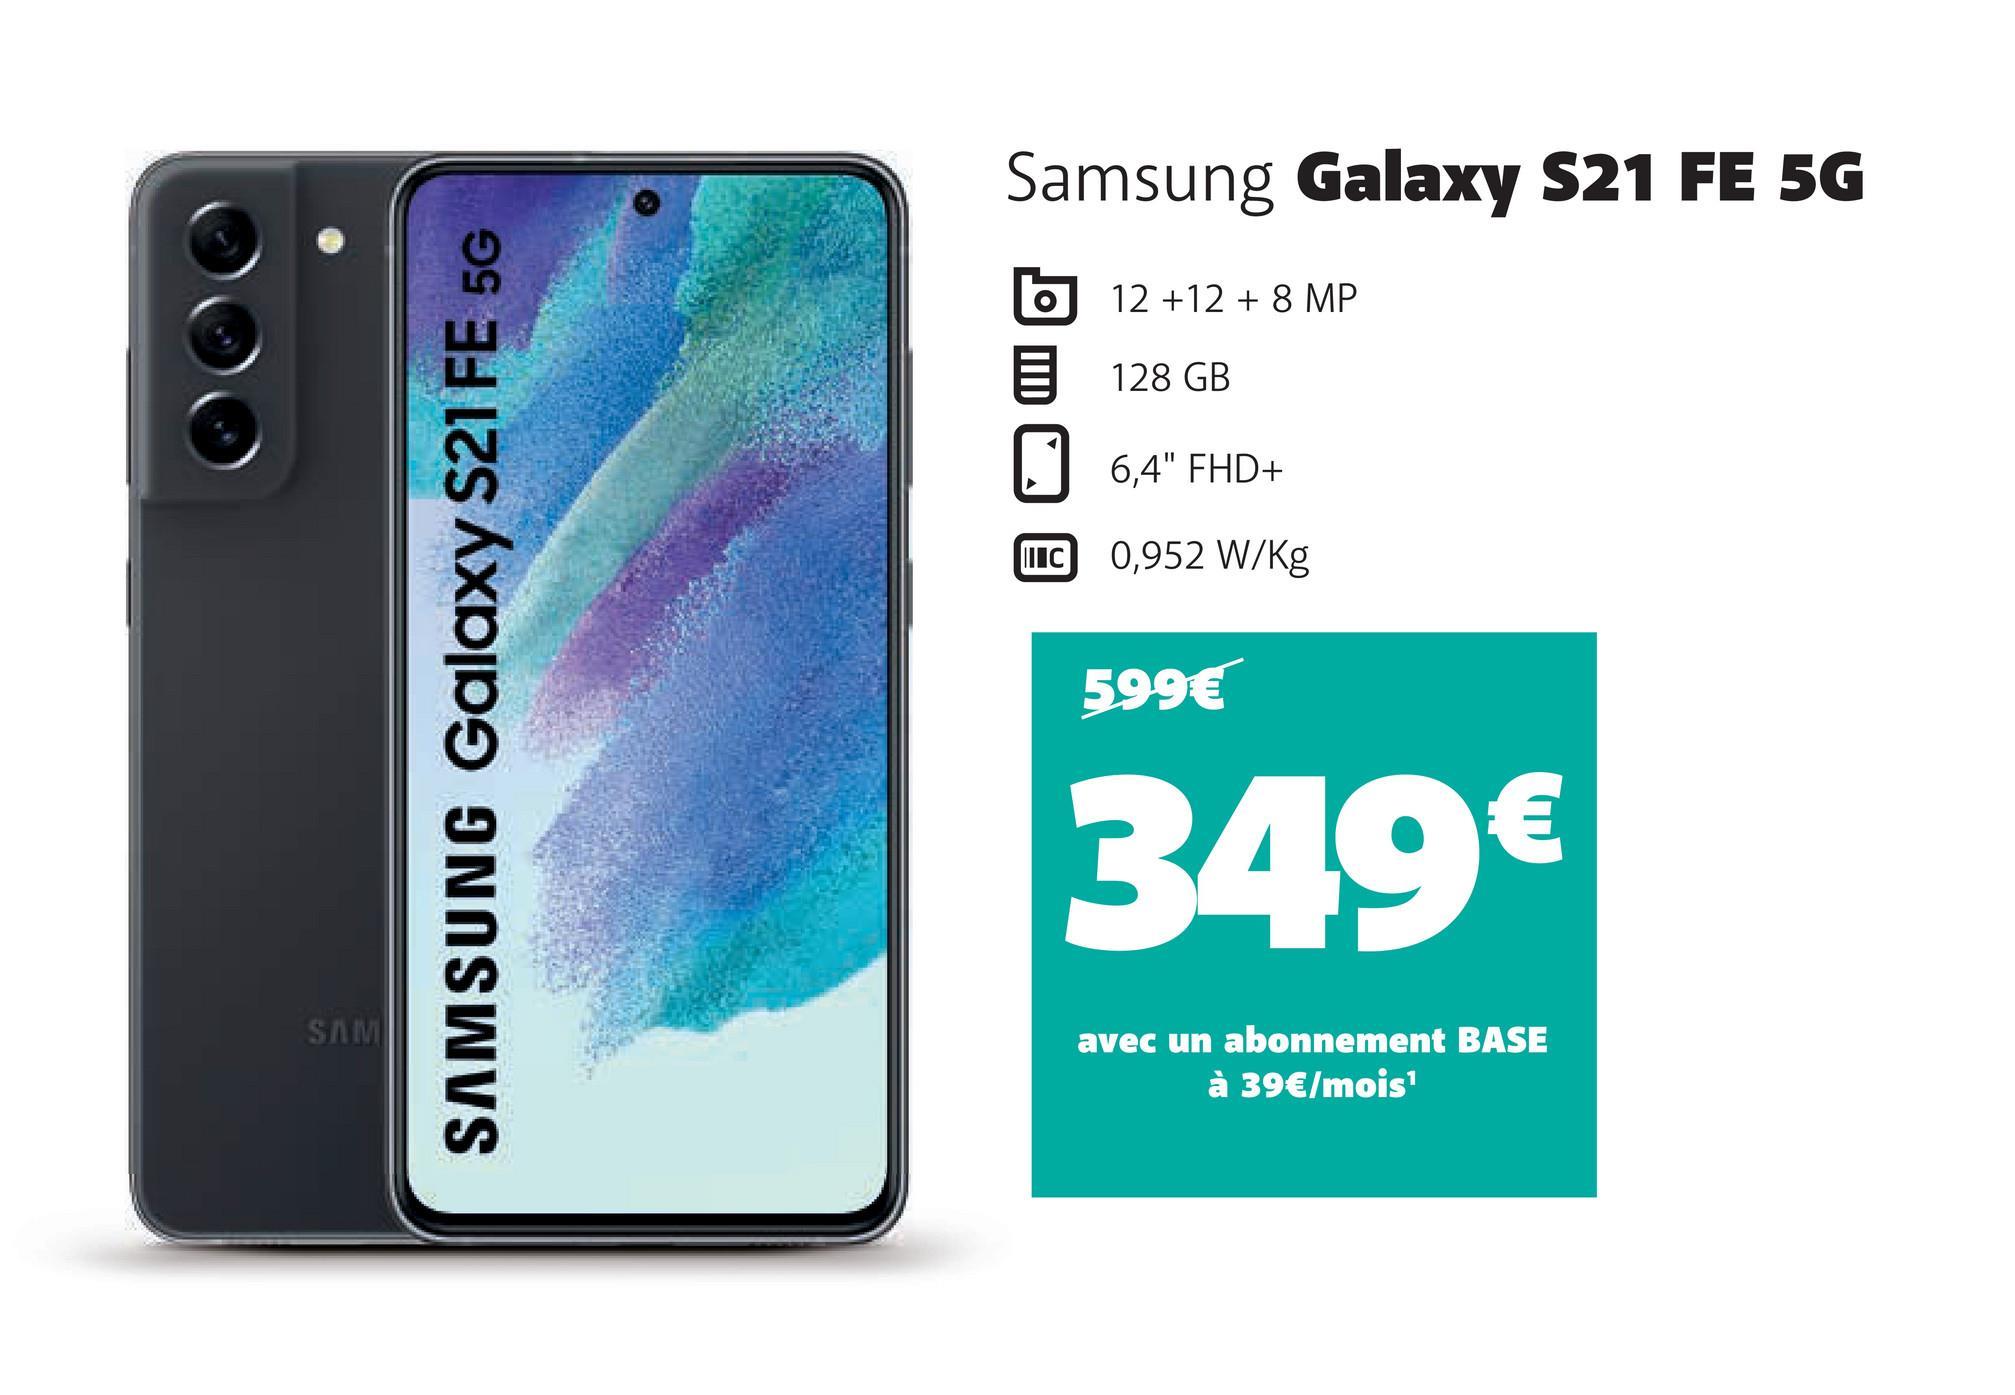 SAM
SAMSUNG Galaxy S21 FE 5G
Samsung Galaxy S21 FE 5G
12 +12 + 8 MP
128 GB
6,4" FHD+
IC 0,952 W/kg
599€
349€
avec un abonnement BASE
à 39€/mois¹